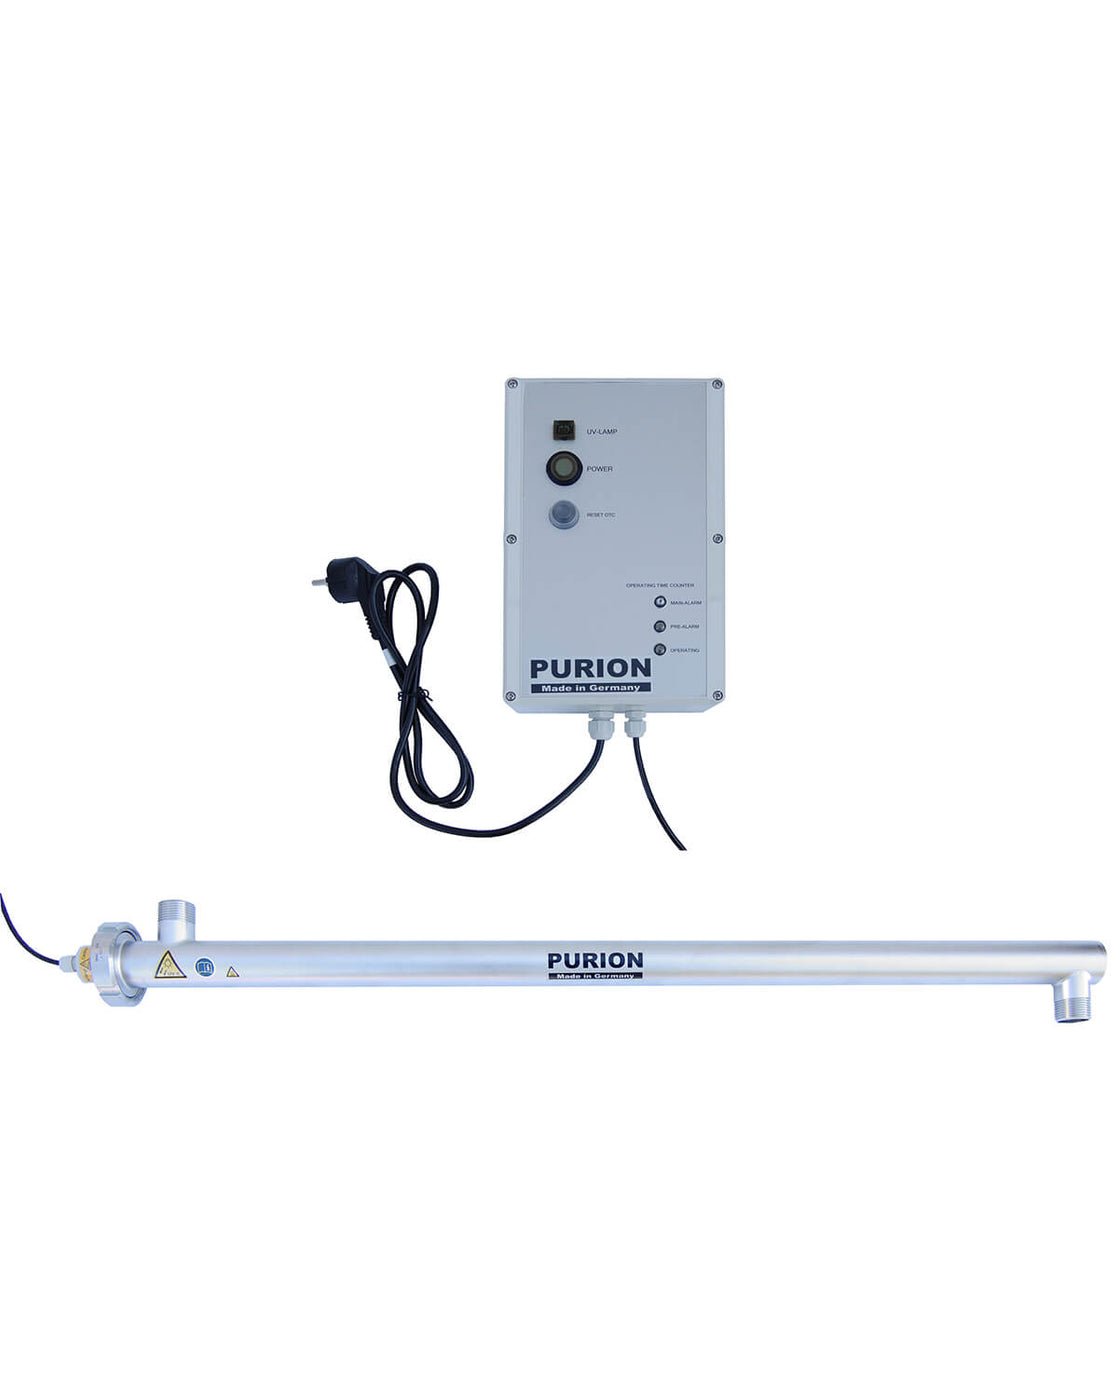 Ein kleines elektronisches Gerät mit UV-C-Lichtdurchlässigkeit und einem daran befestigten Kabel, der PURION 2500 90 W PRO OTC Plus der PURION GmbH.